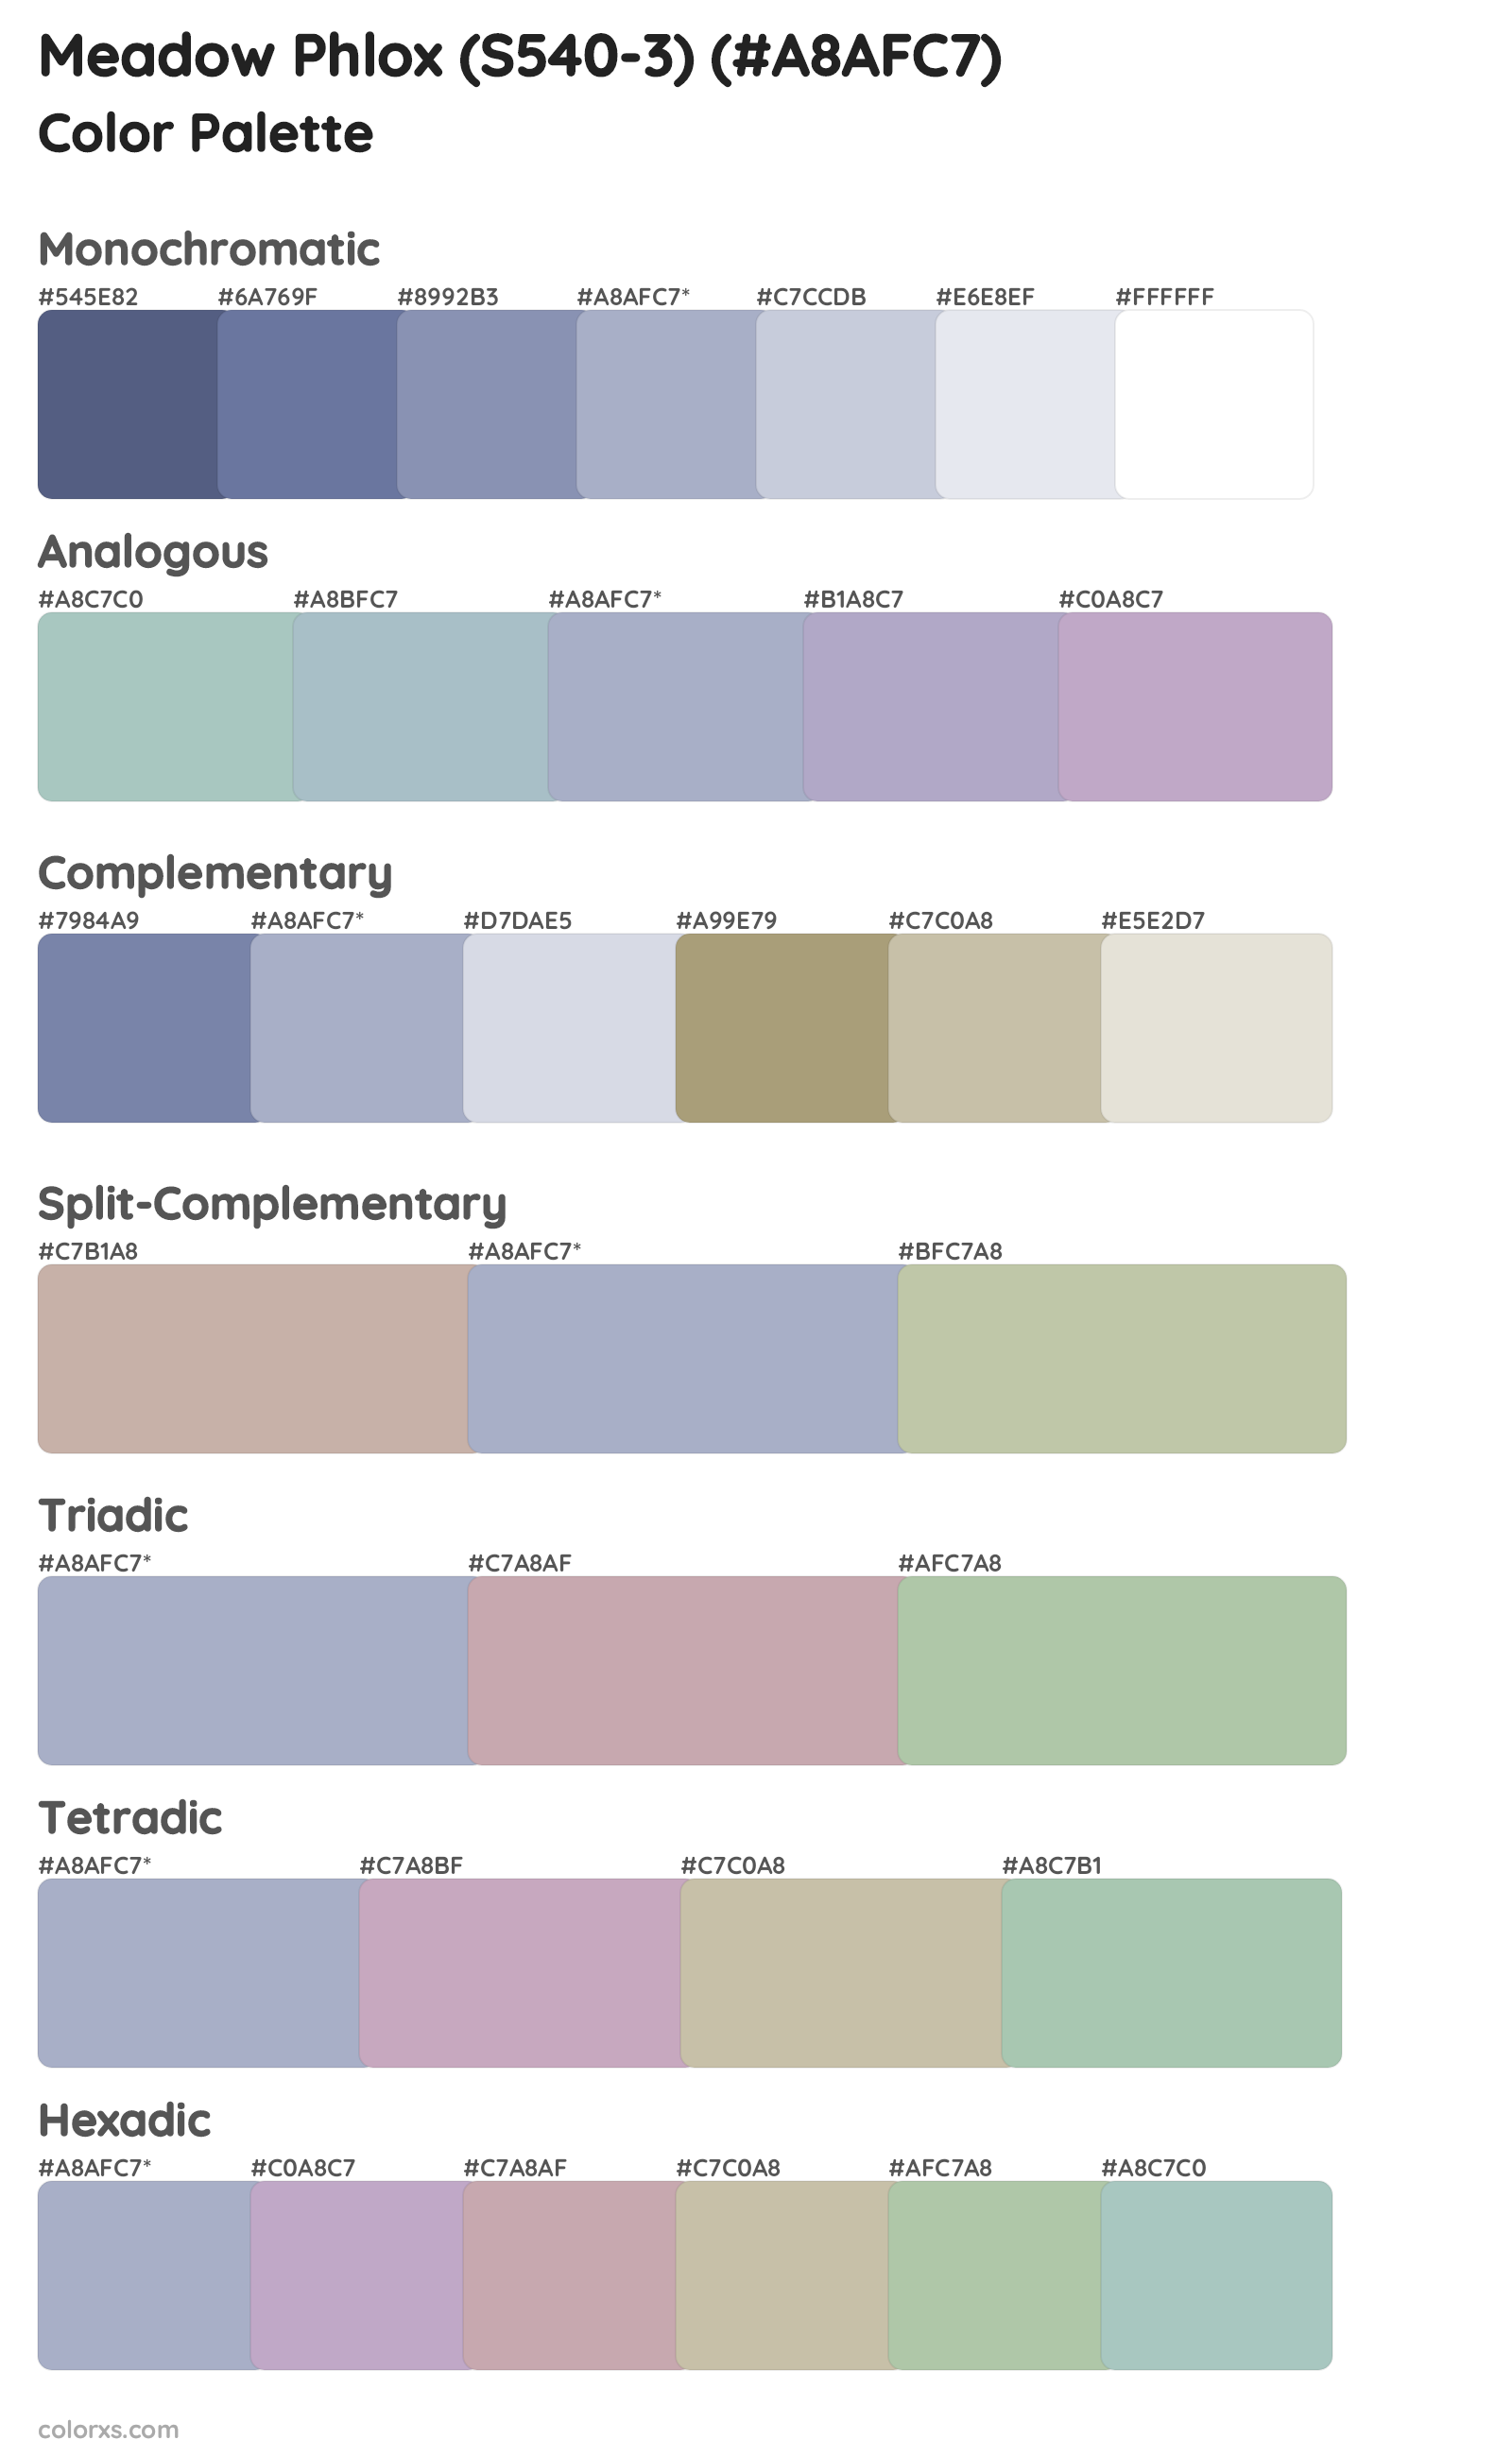 Meadow Phlox (S540-3) Color Scheme Palettes